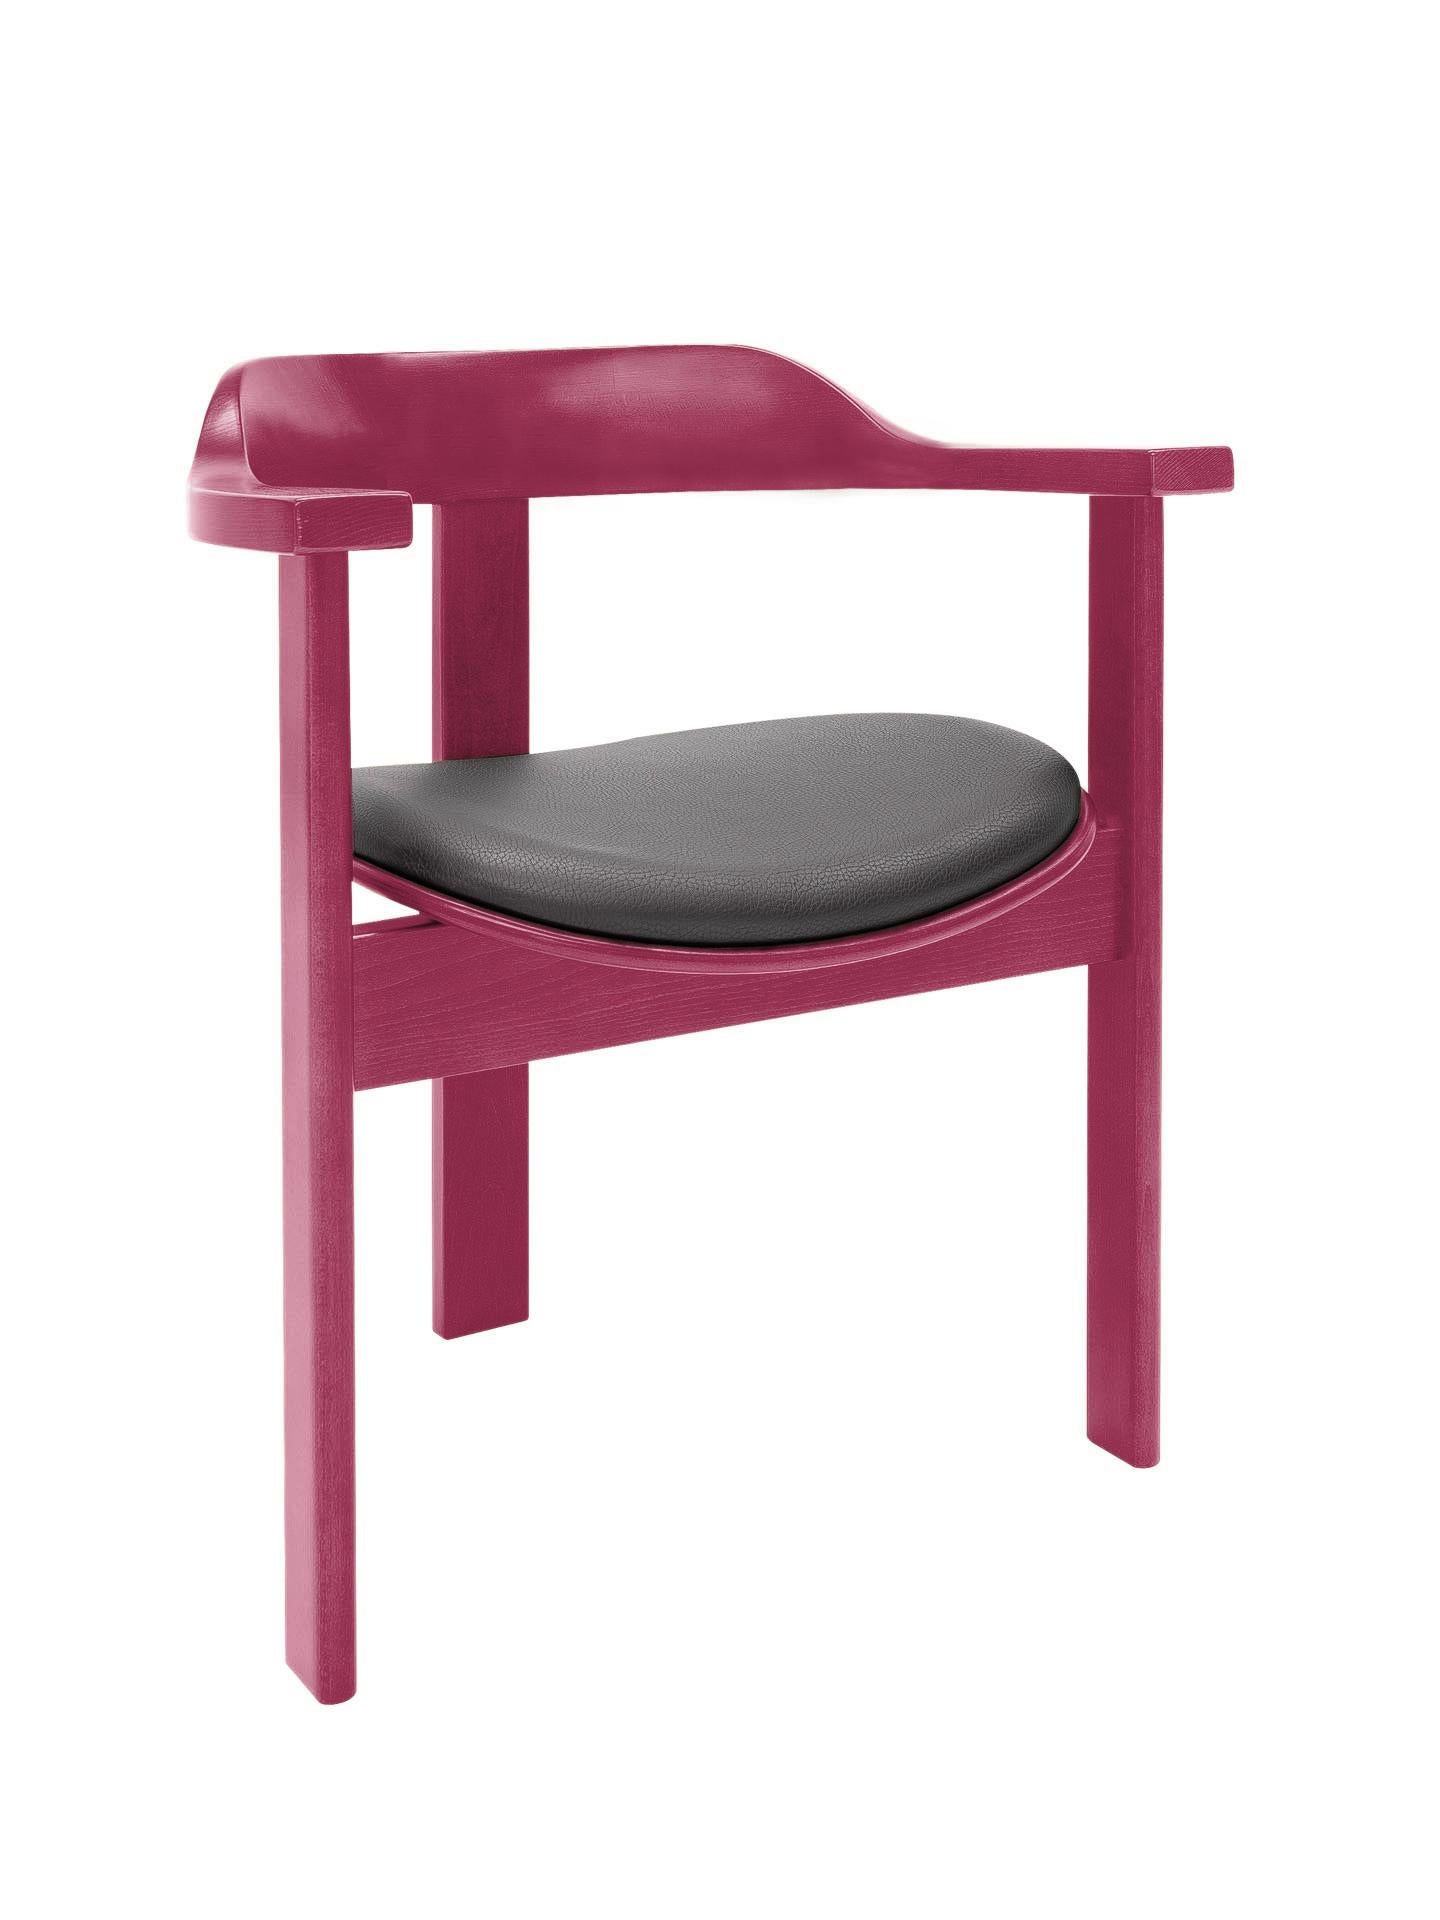 Der Haussmann-Stuhl ist ein lebendiges, zeitloses Stück voller Komfort und Eleganz.

Dieser einzigartige dreibeinige Stuhl hatte seine Premiere auf der 